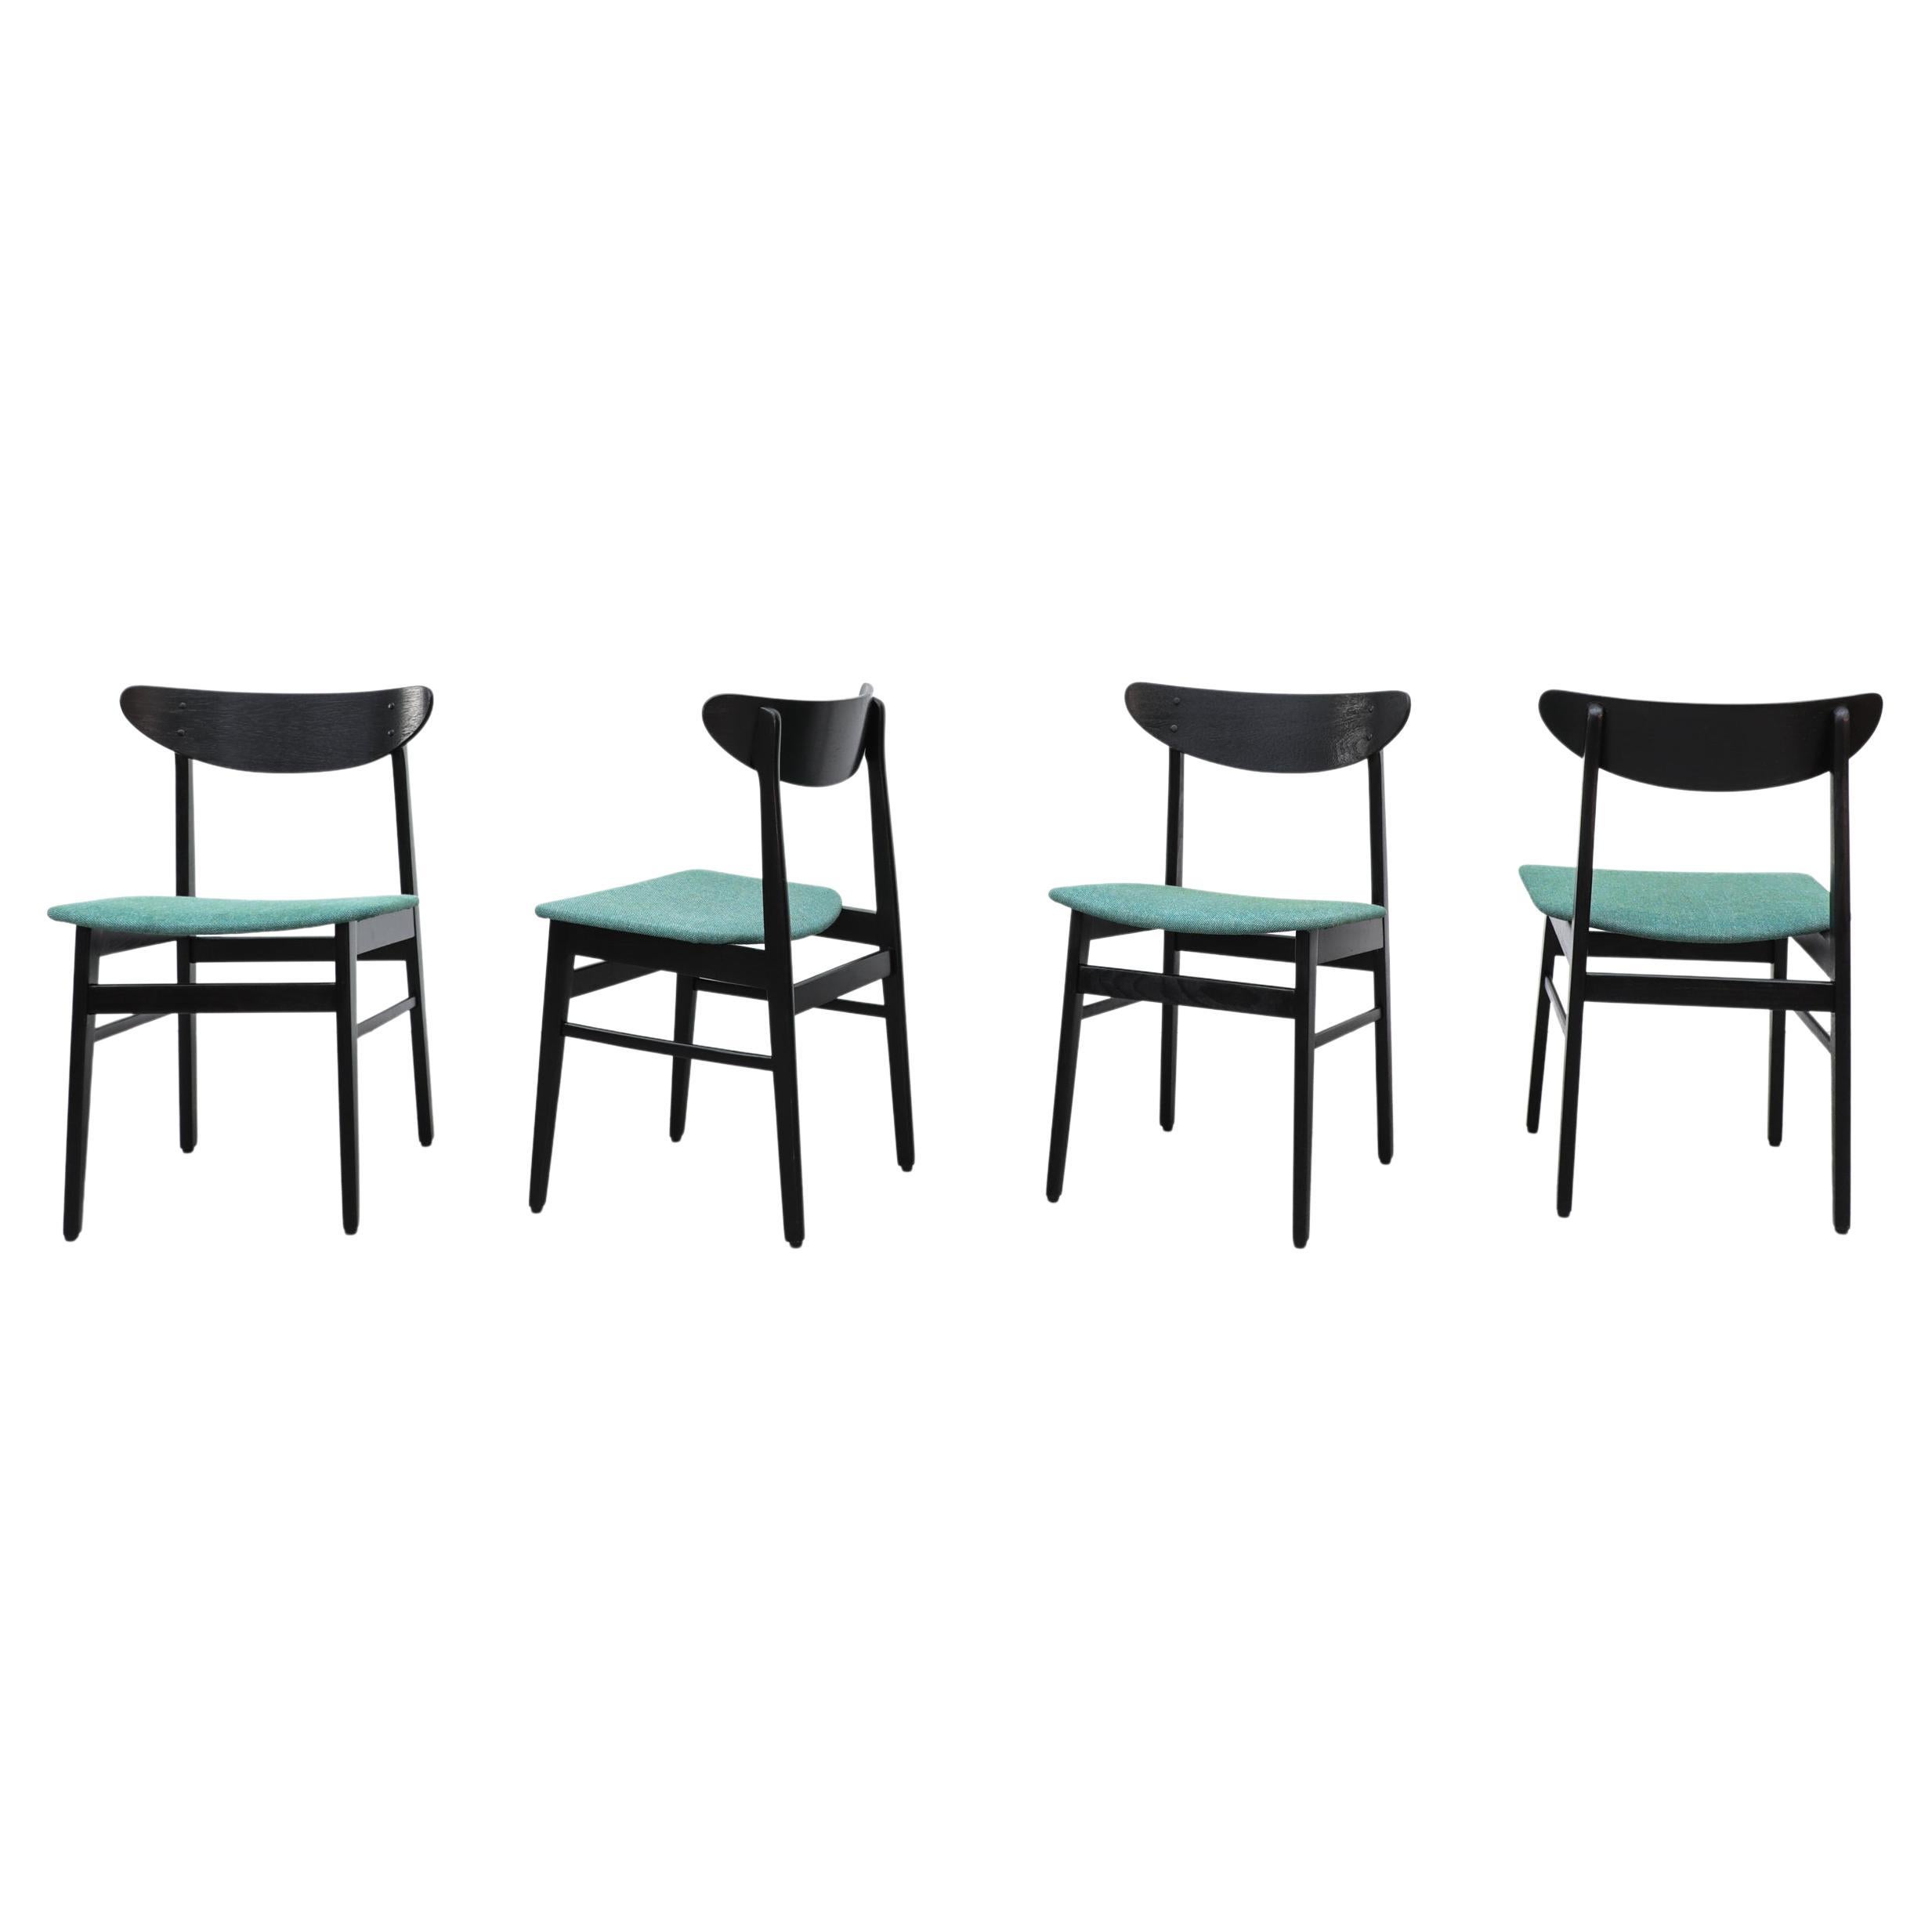 Satz von 4 schwarz lackierten Esszimmerstühlen im Wegner-Stil von Farstrup mit grünen Sitzen